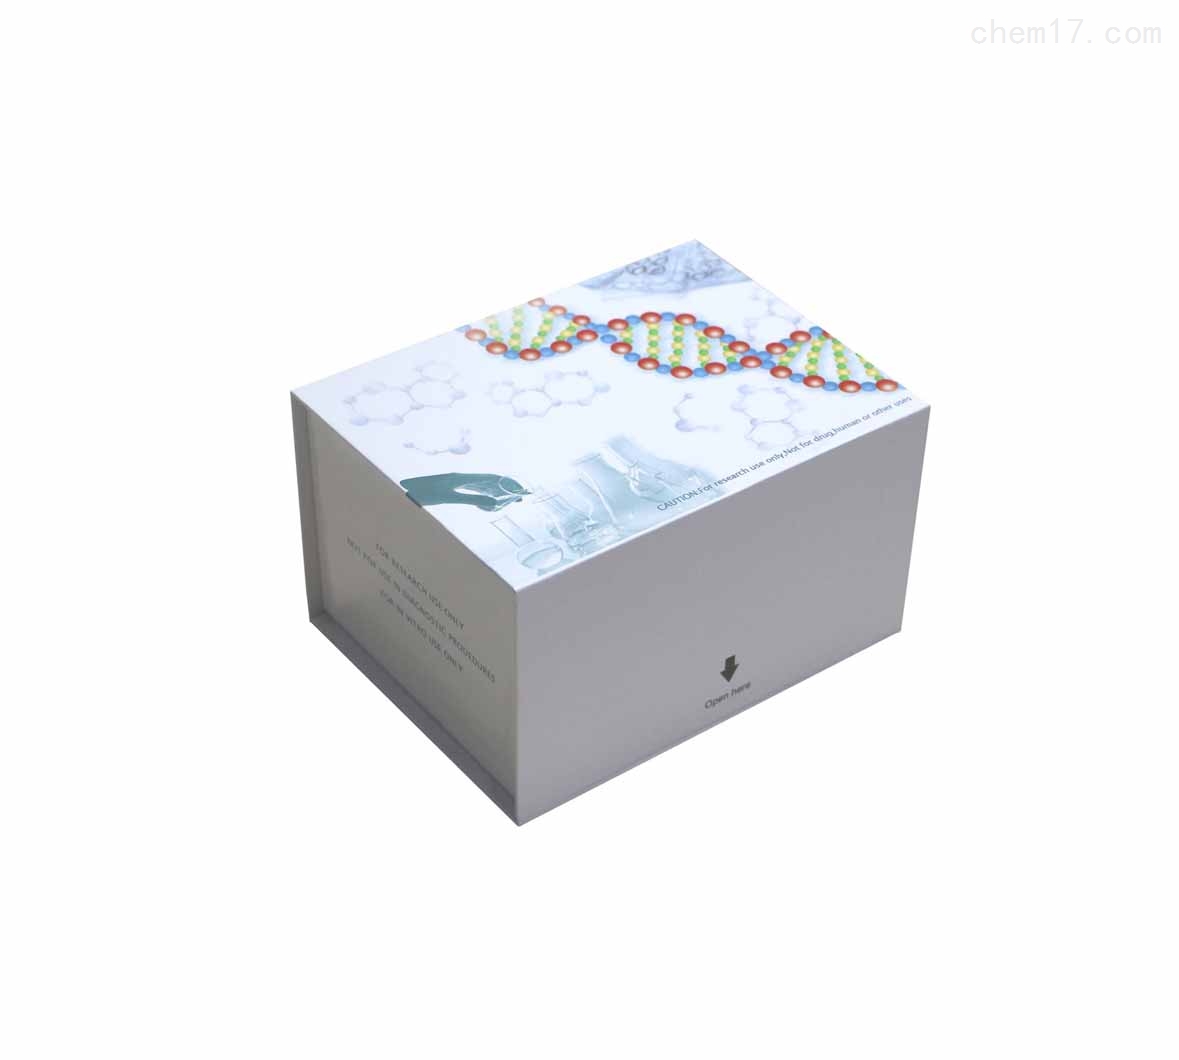 大鼠雄激素(androgen)ELISA试剂盒现货说明书